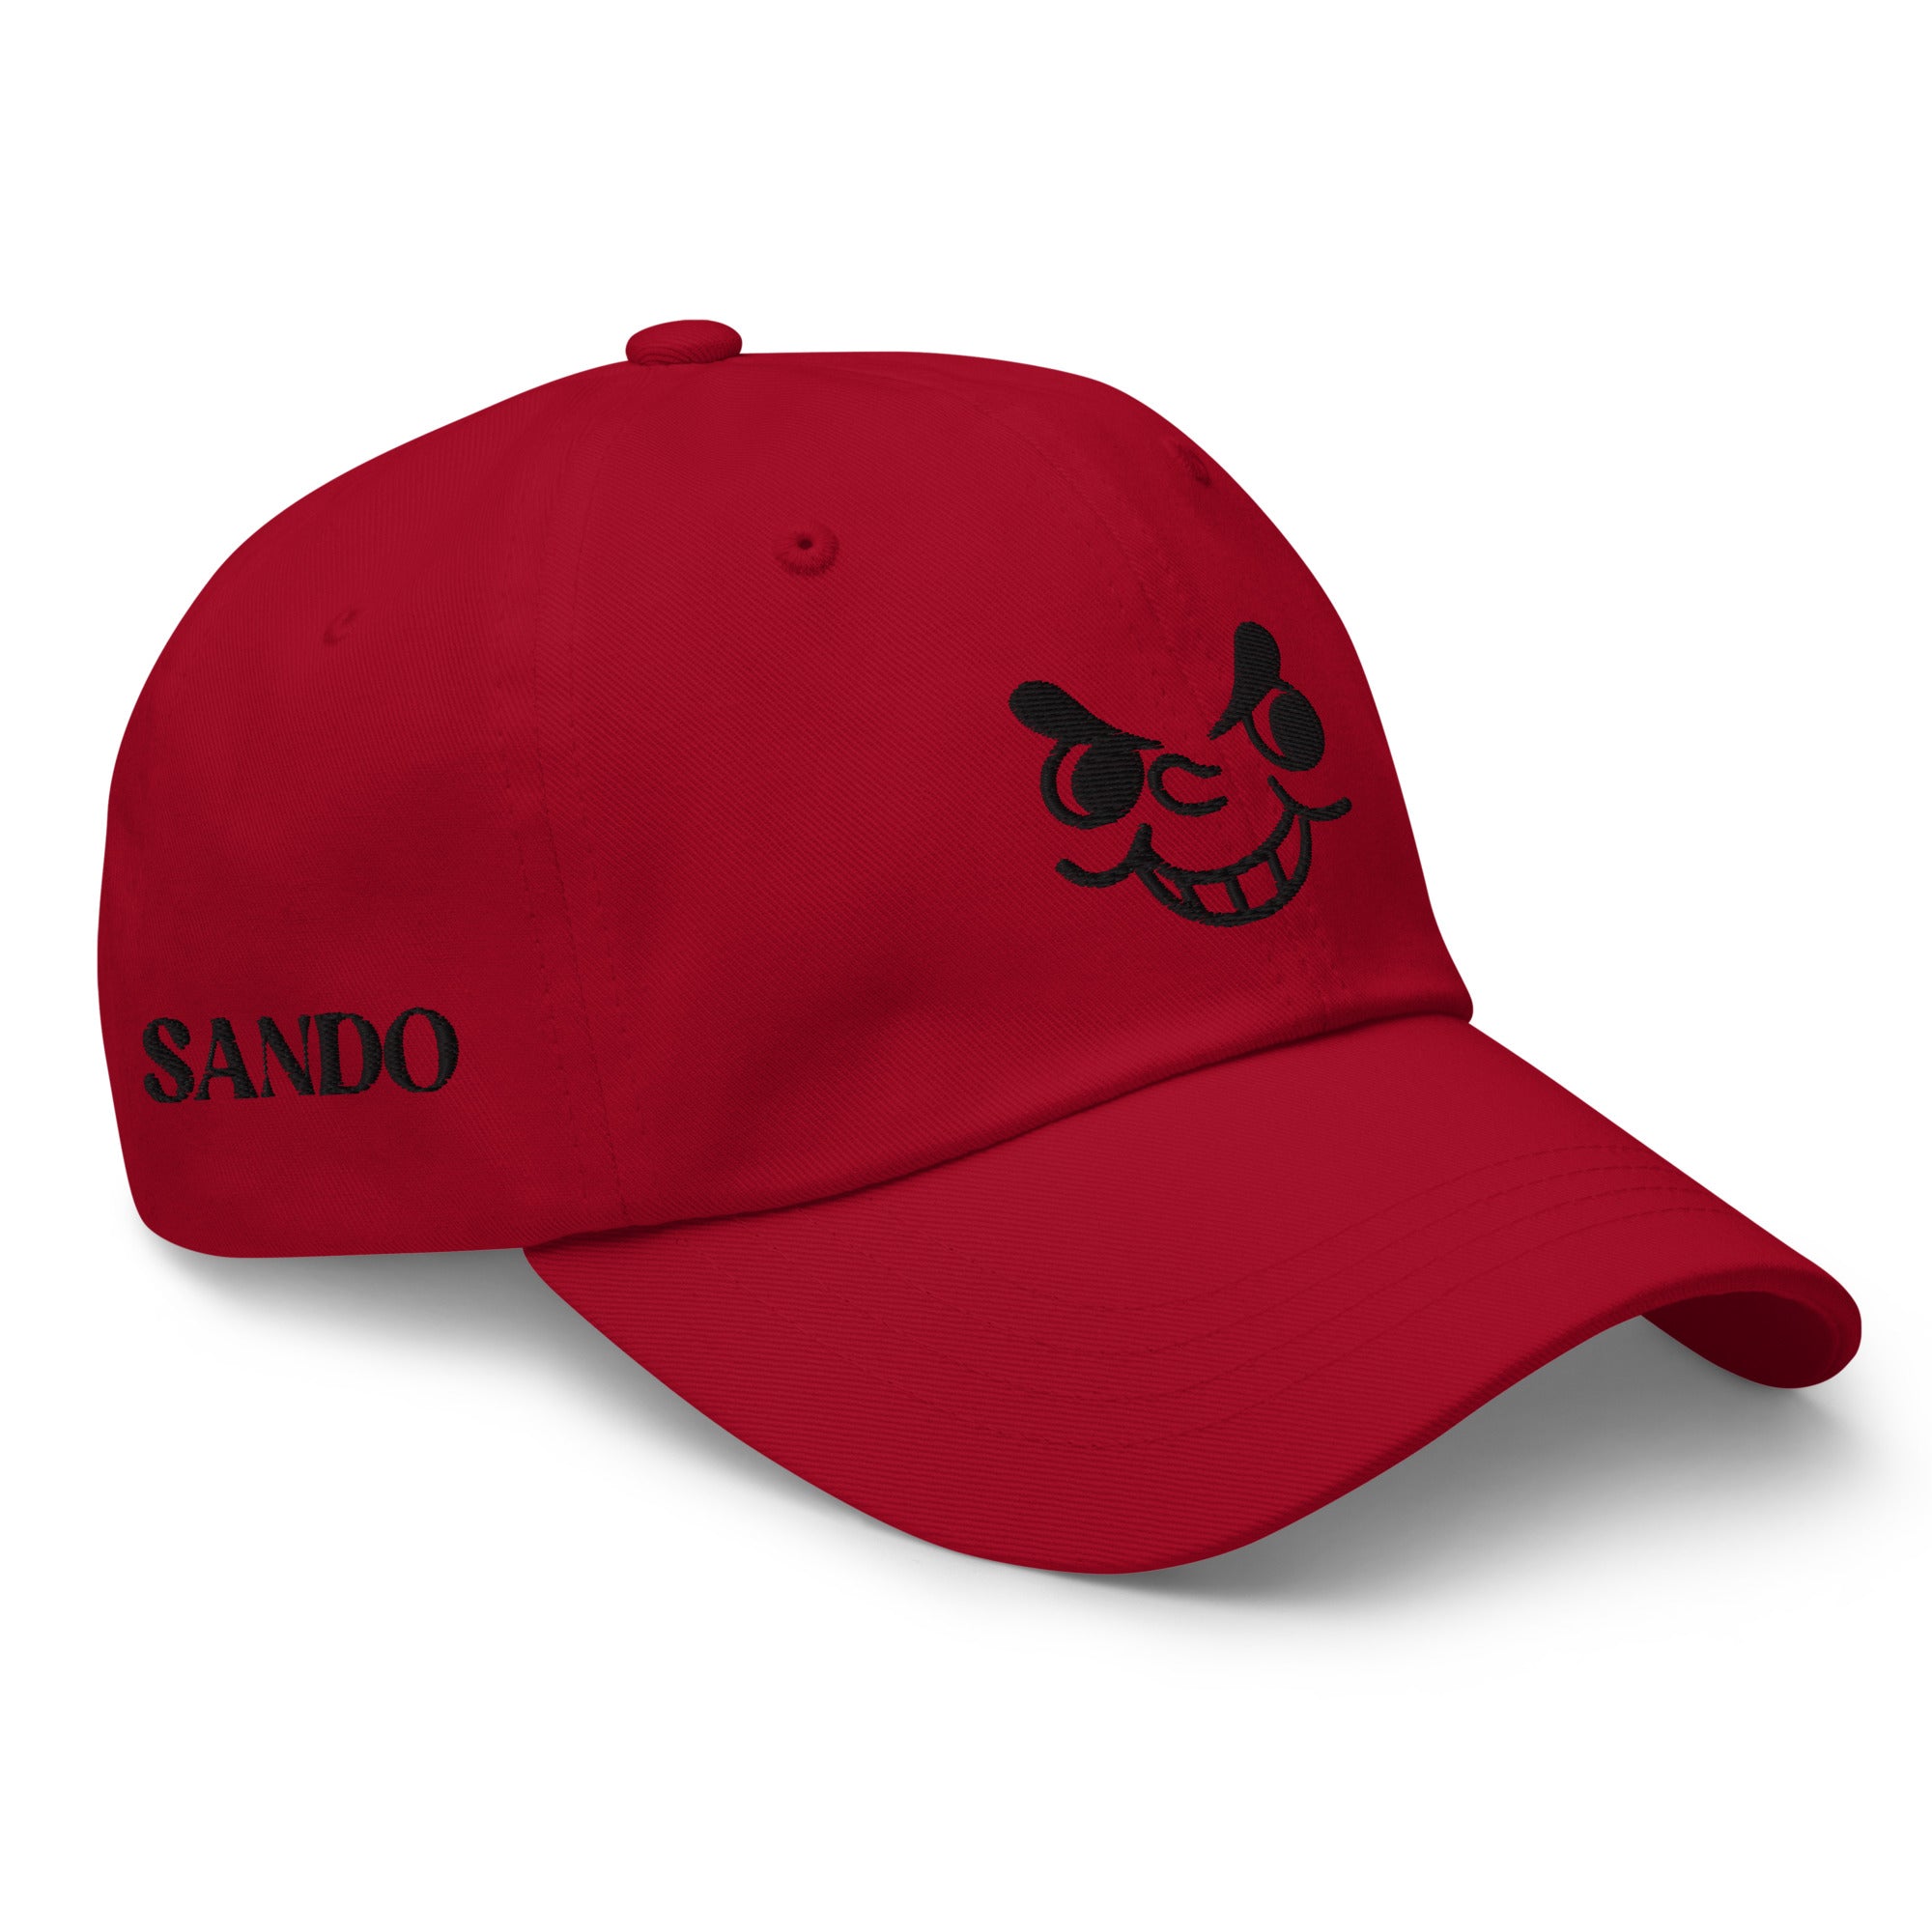 Sandogumi Red Hat